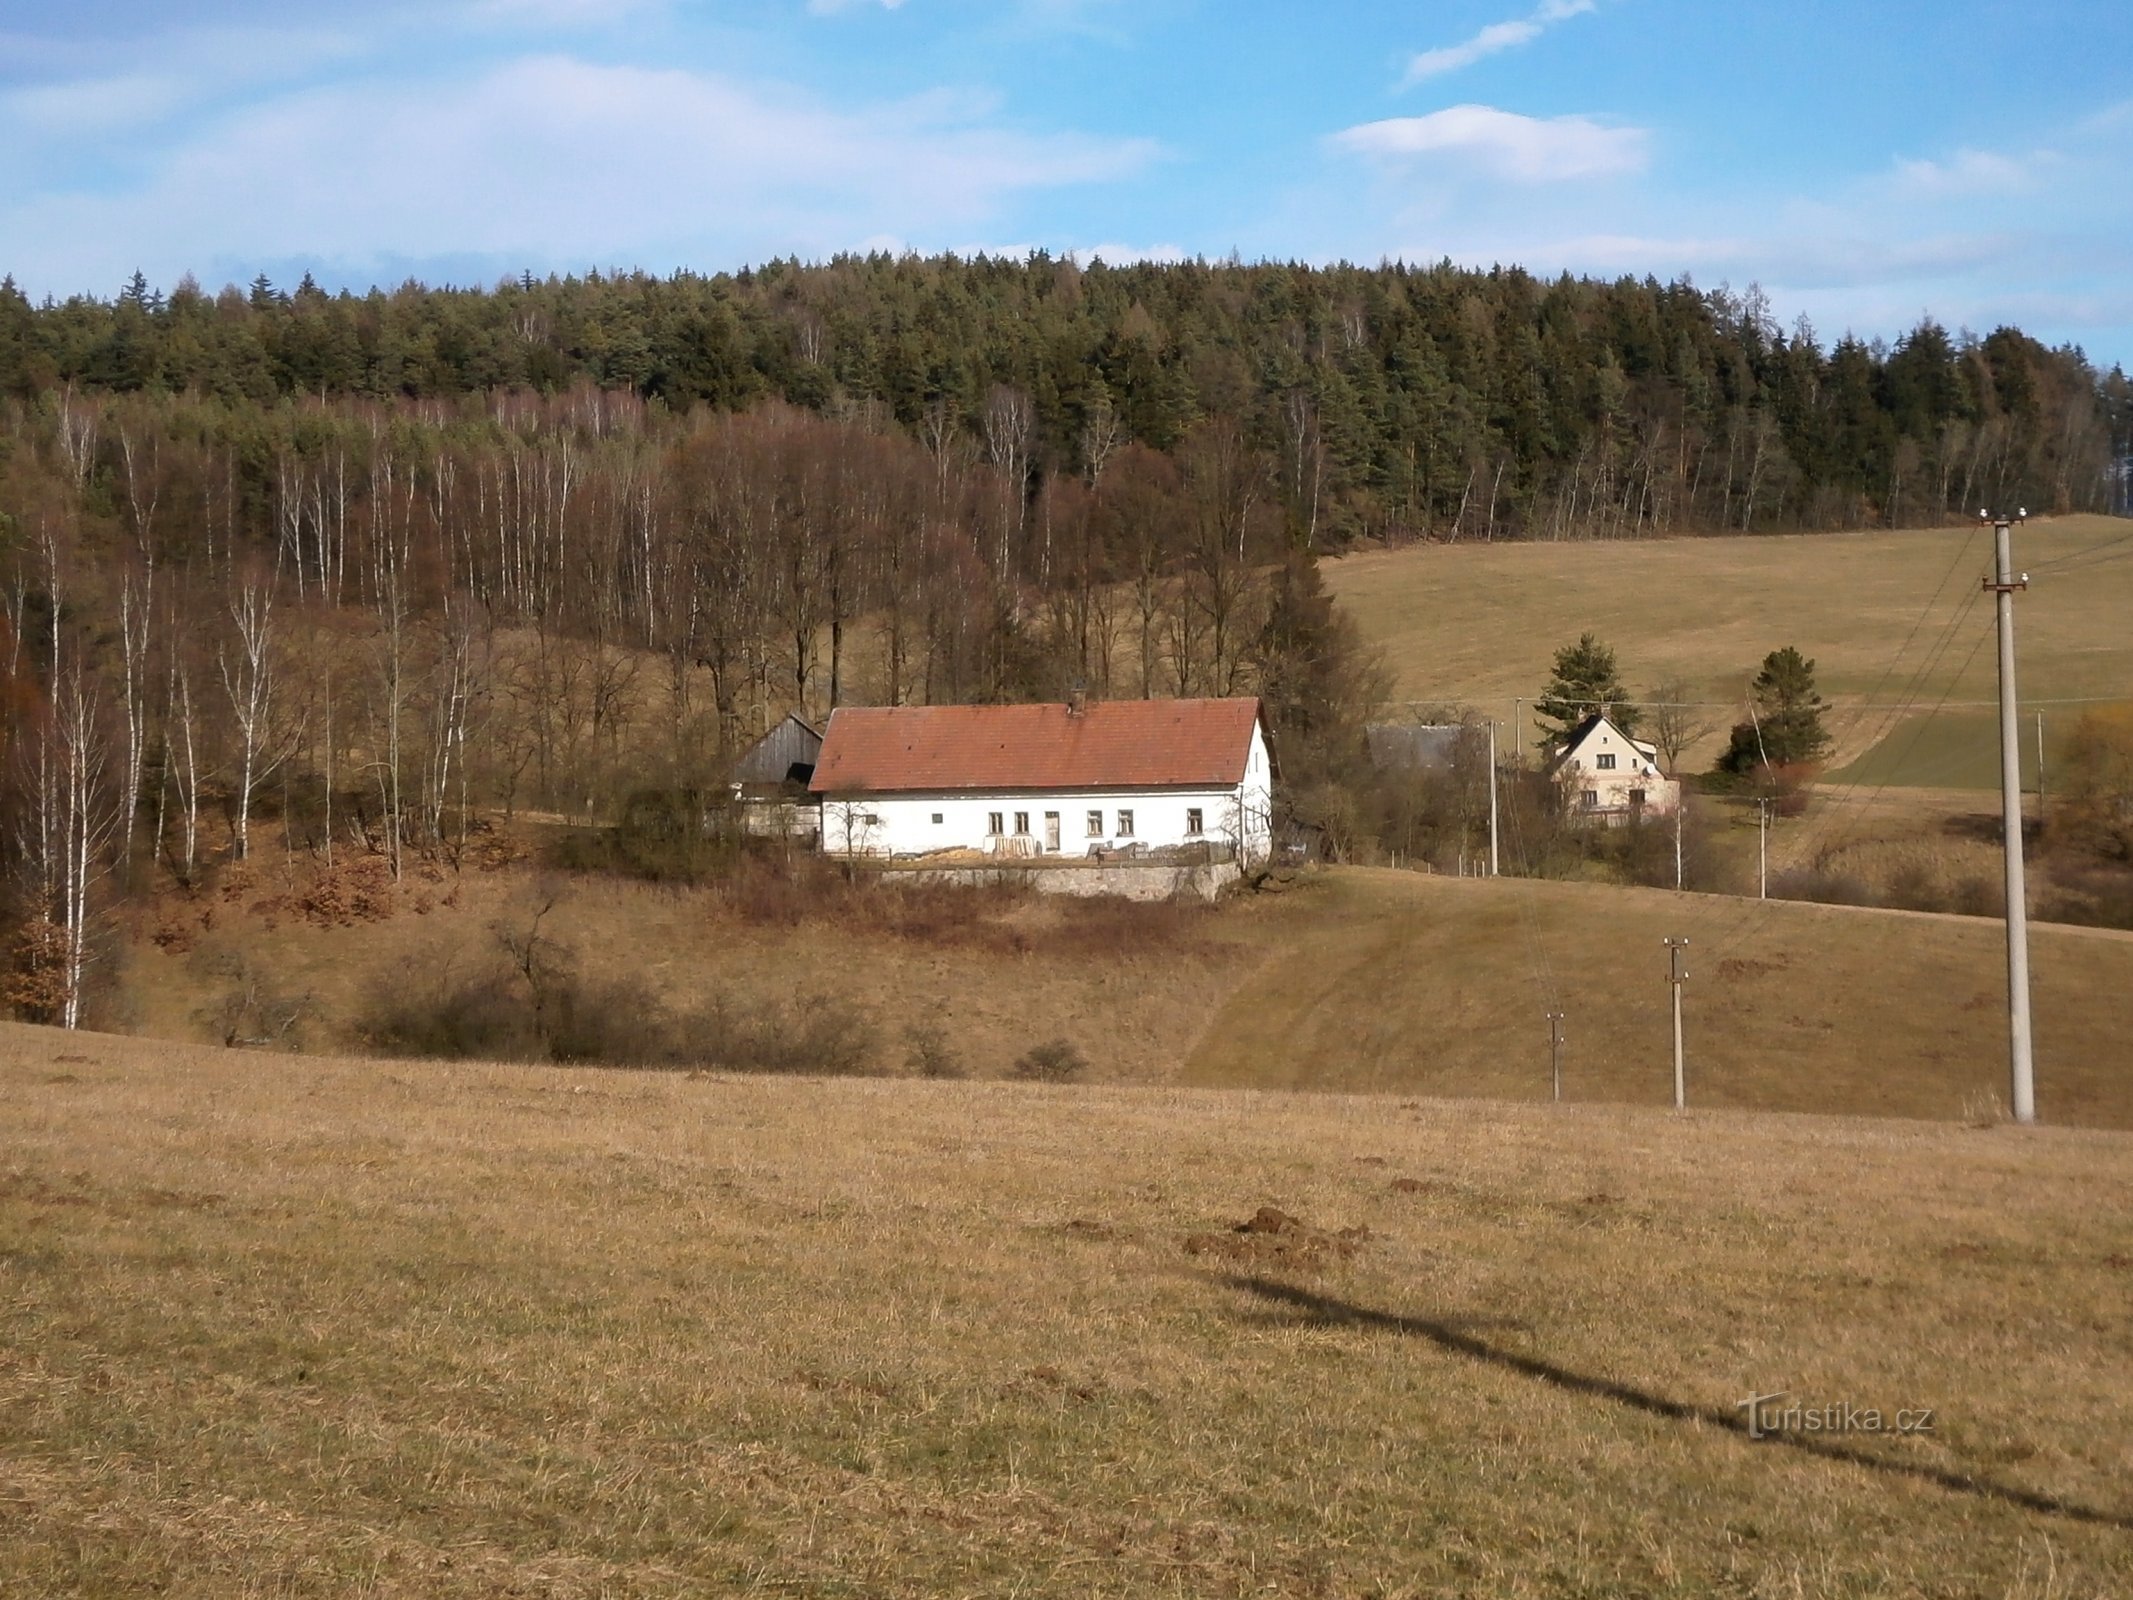 Havelovice del av Svobodné